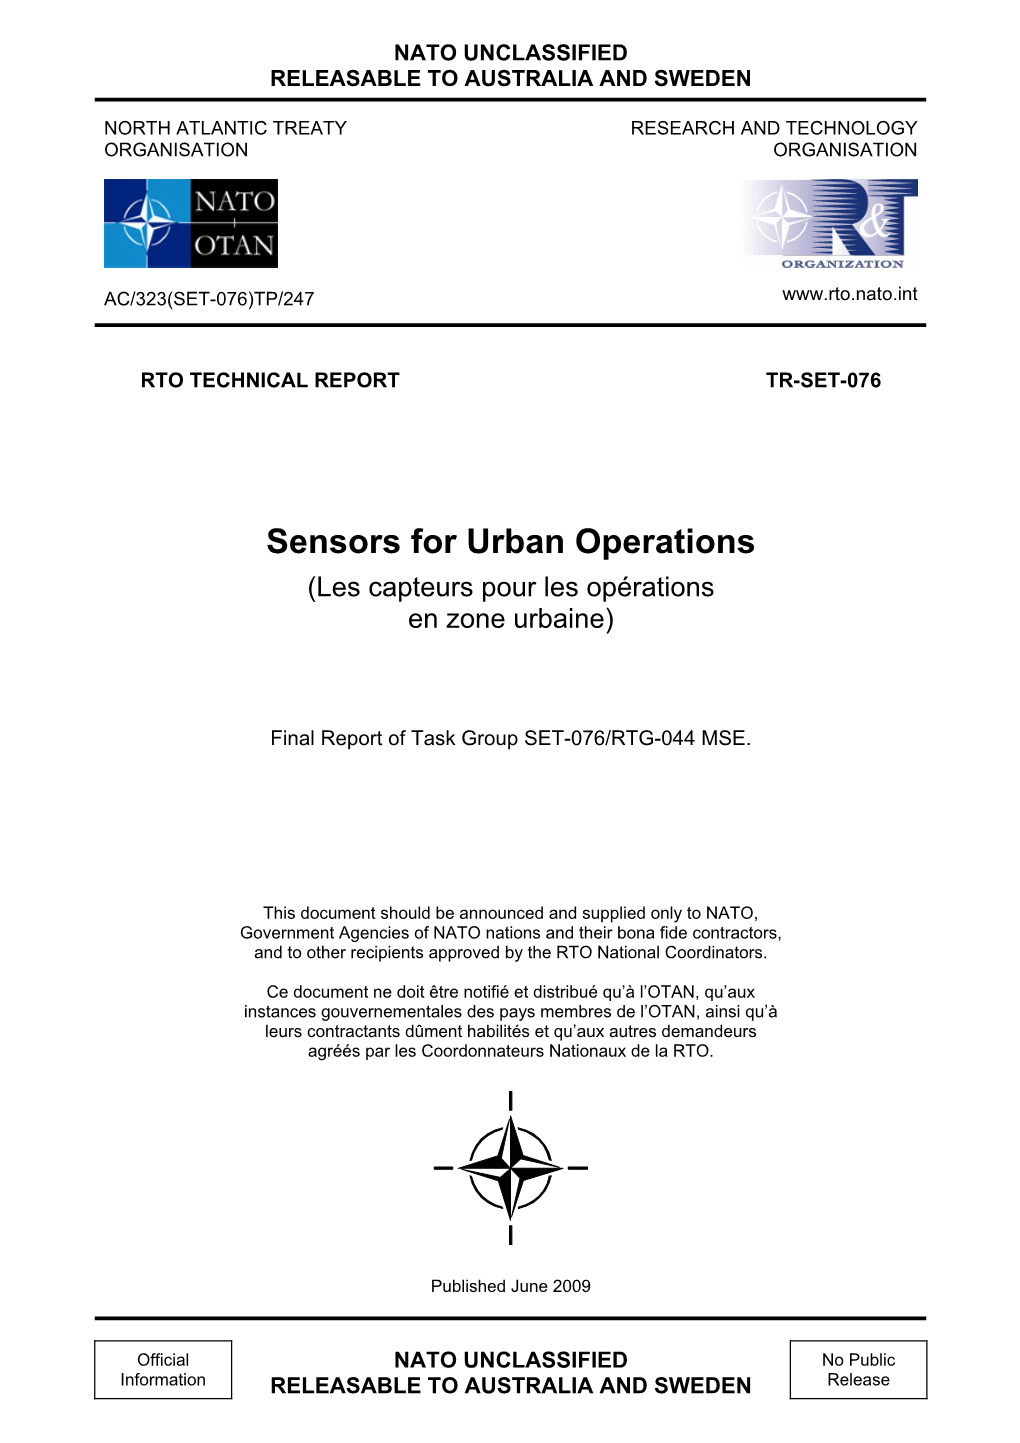 Sensors for Urban Operations (Les Capteurs Pour Les Opérations En Zone Urbaine)